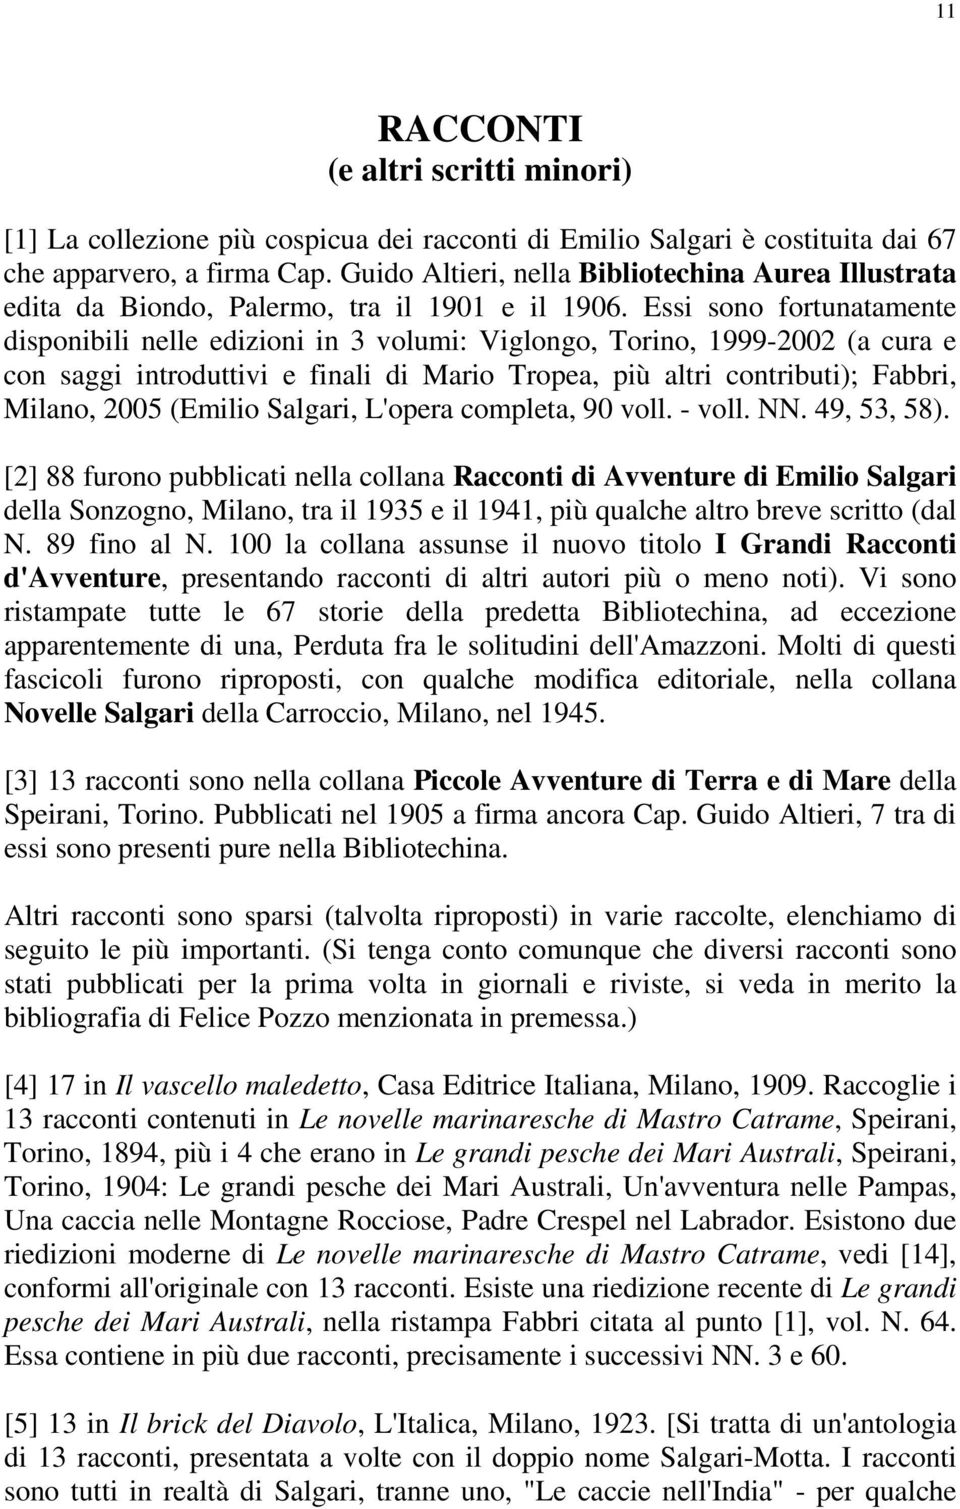 Essi sono fortunatamente disponibili nelle edizioni in 3 volumi: Viglongo, Torino, 1999-2002 (a cura e con saggi introduttivi e finali di Mario Tropea, più altri contributi); Fabbri, Milano, 2005